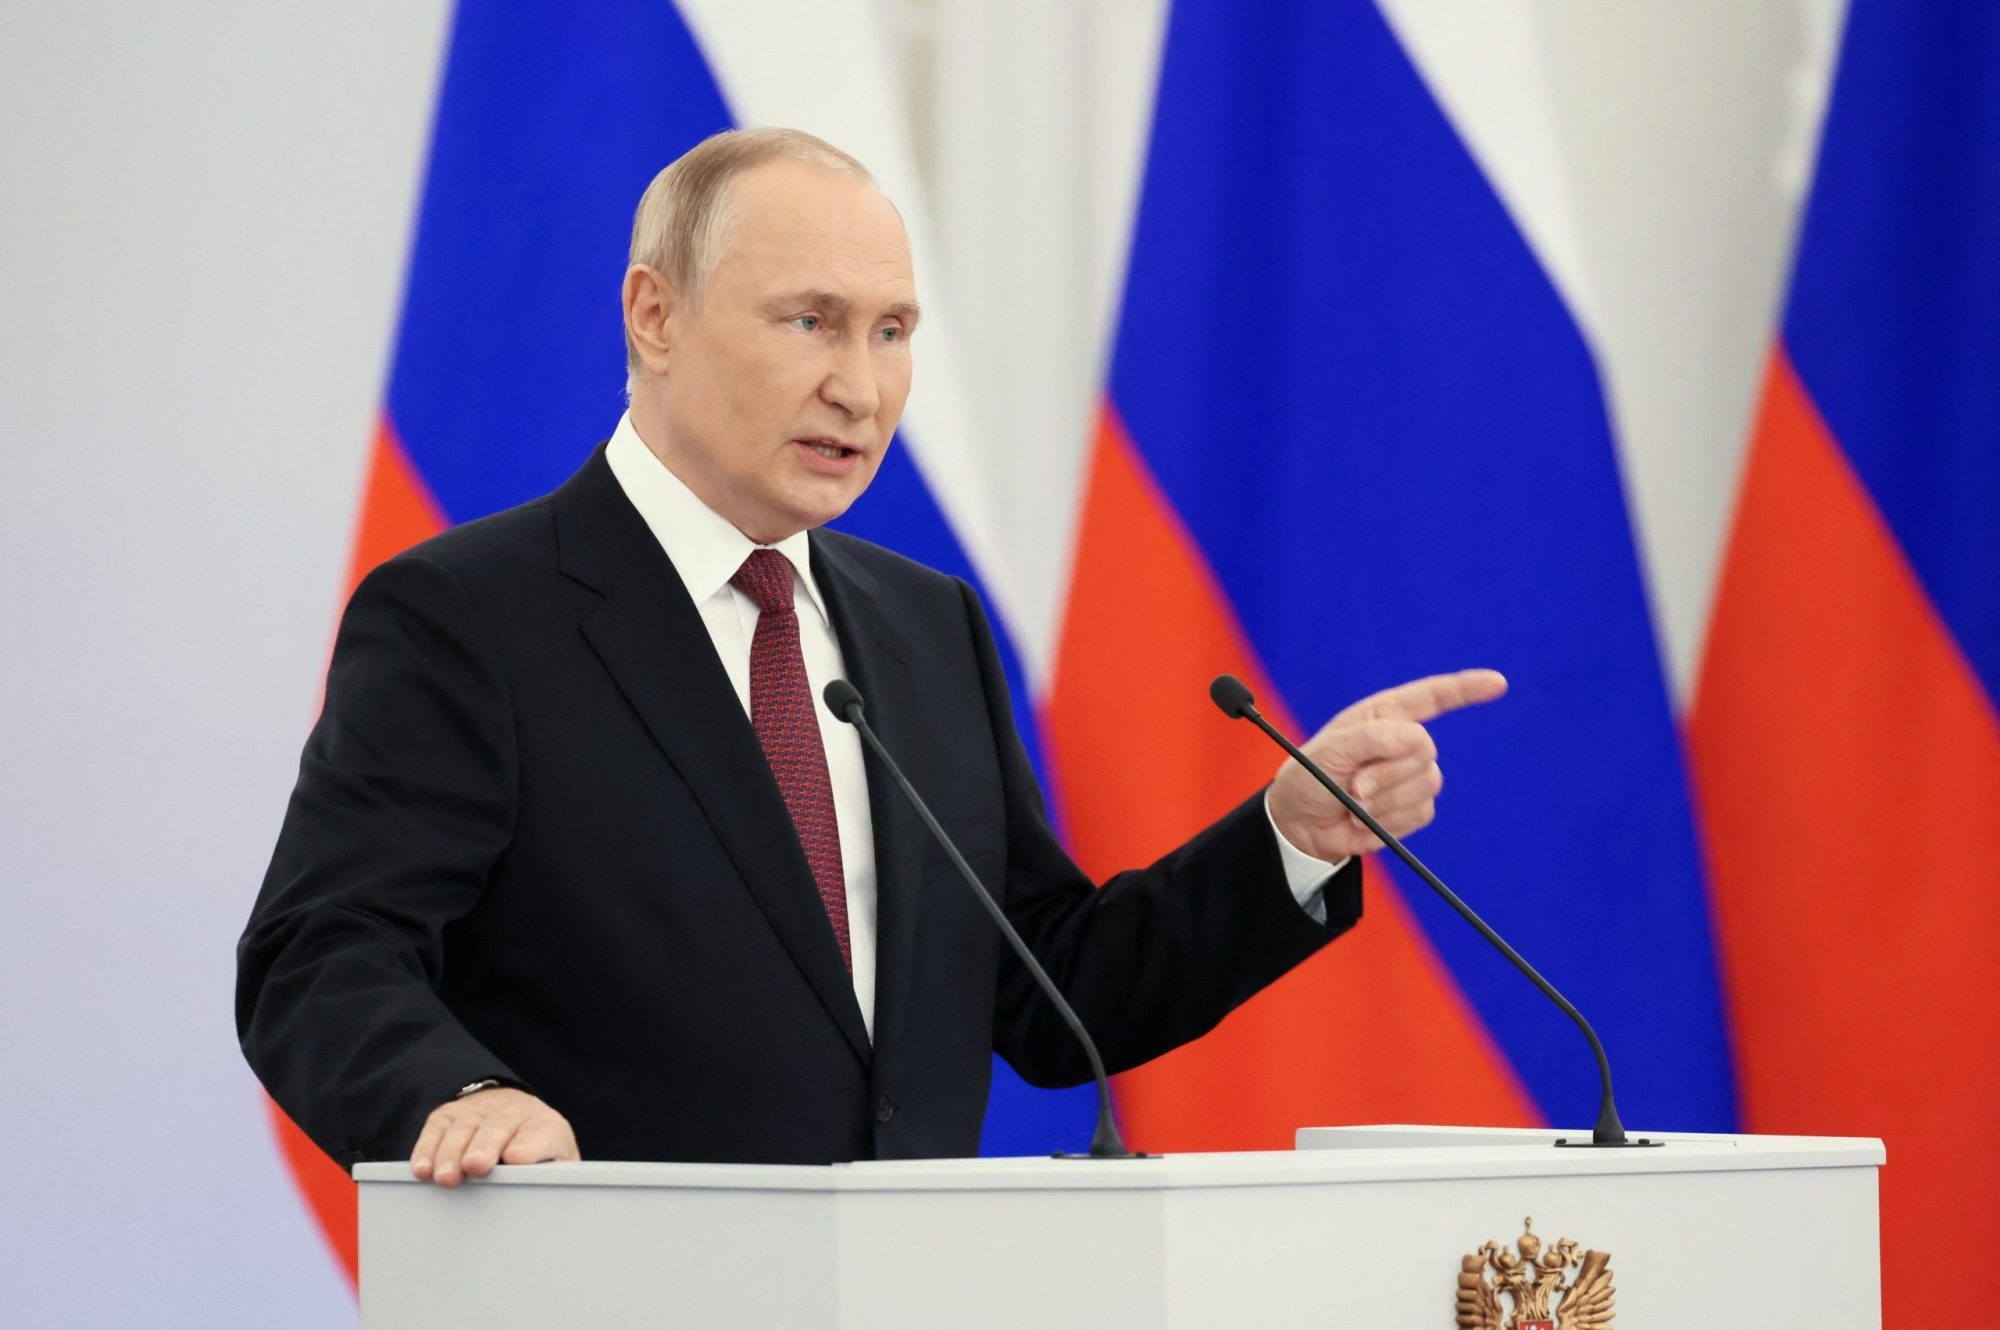 پوتین خواستار سیستم پرداخت بین المللی مبتنی بر بلاکچین